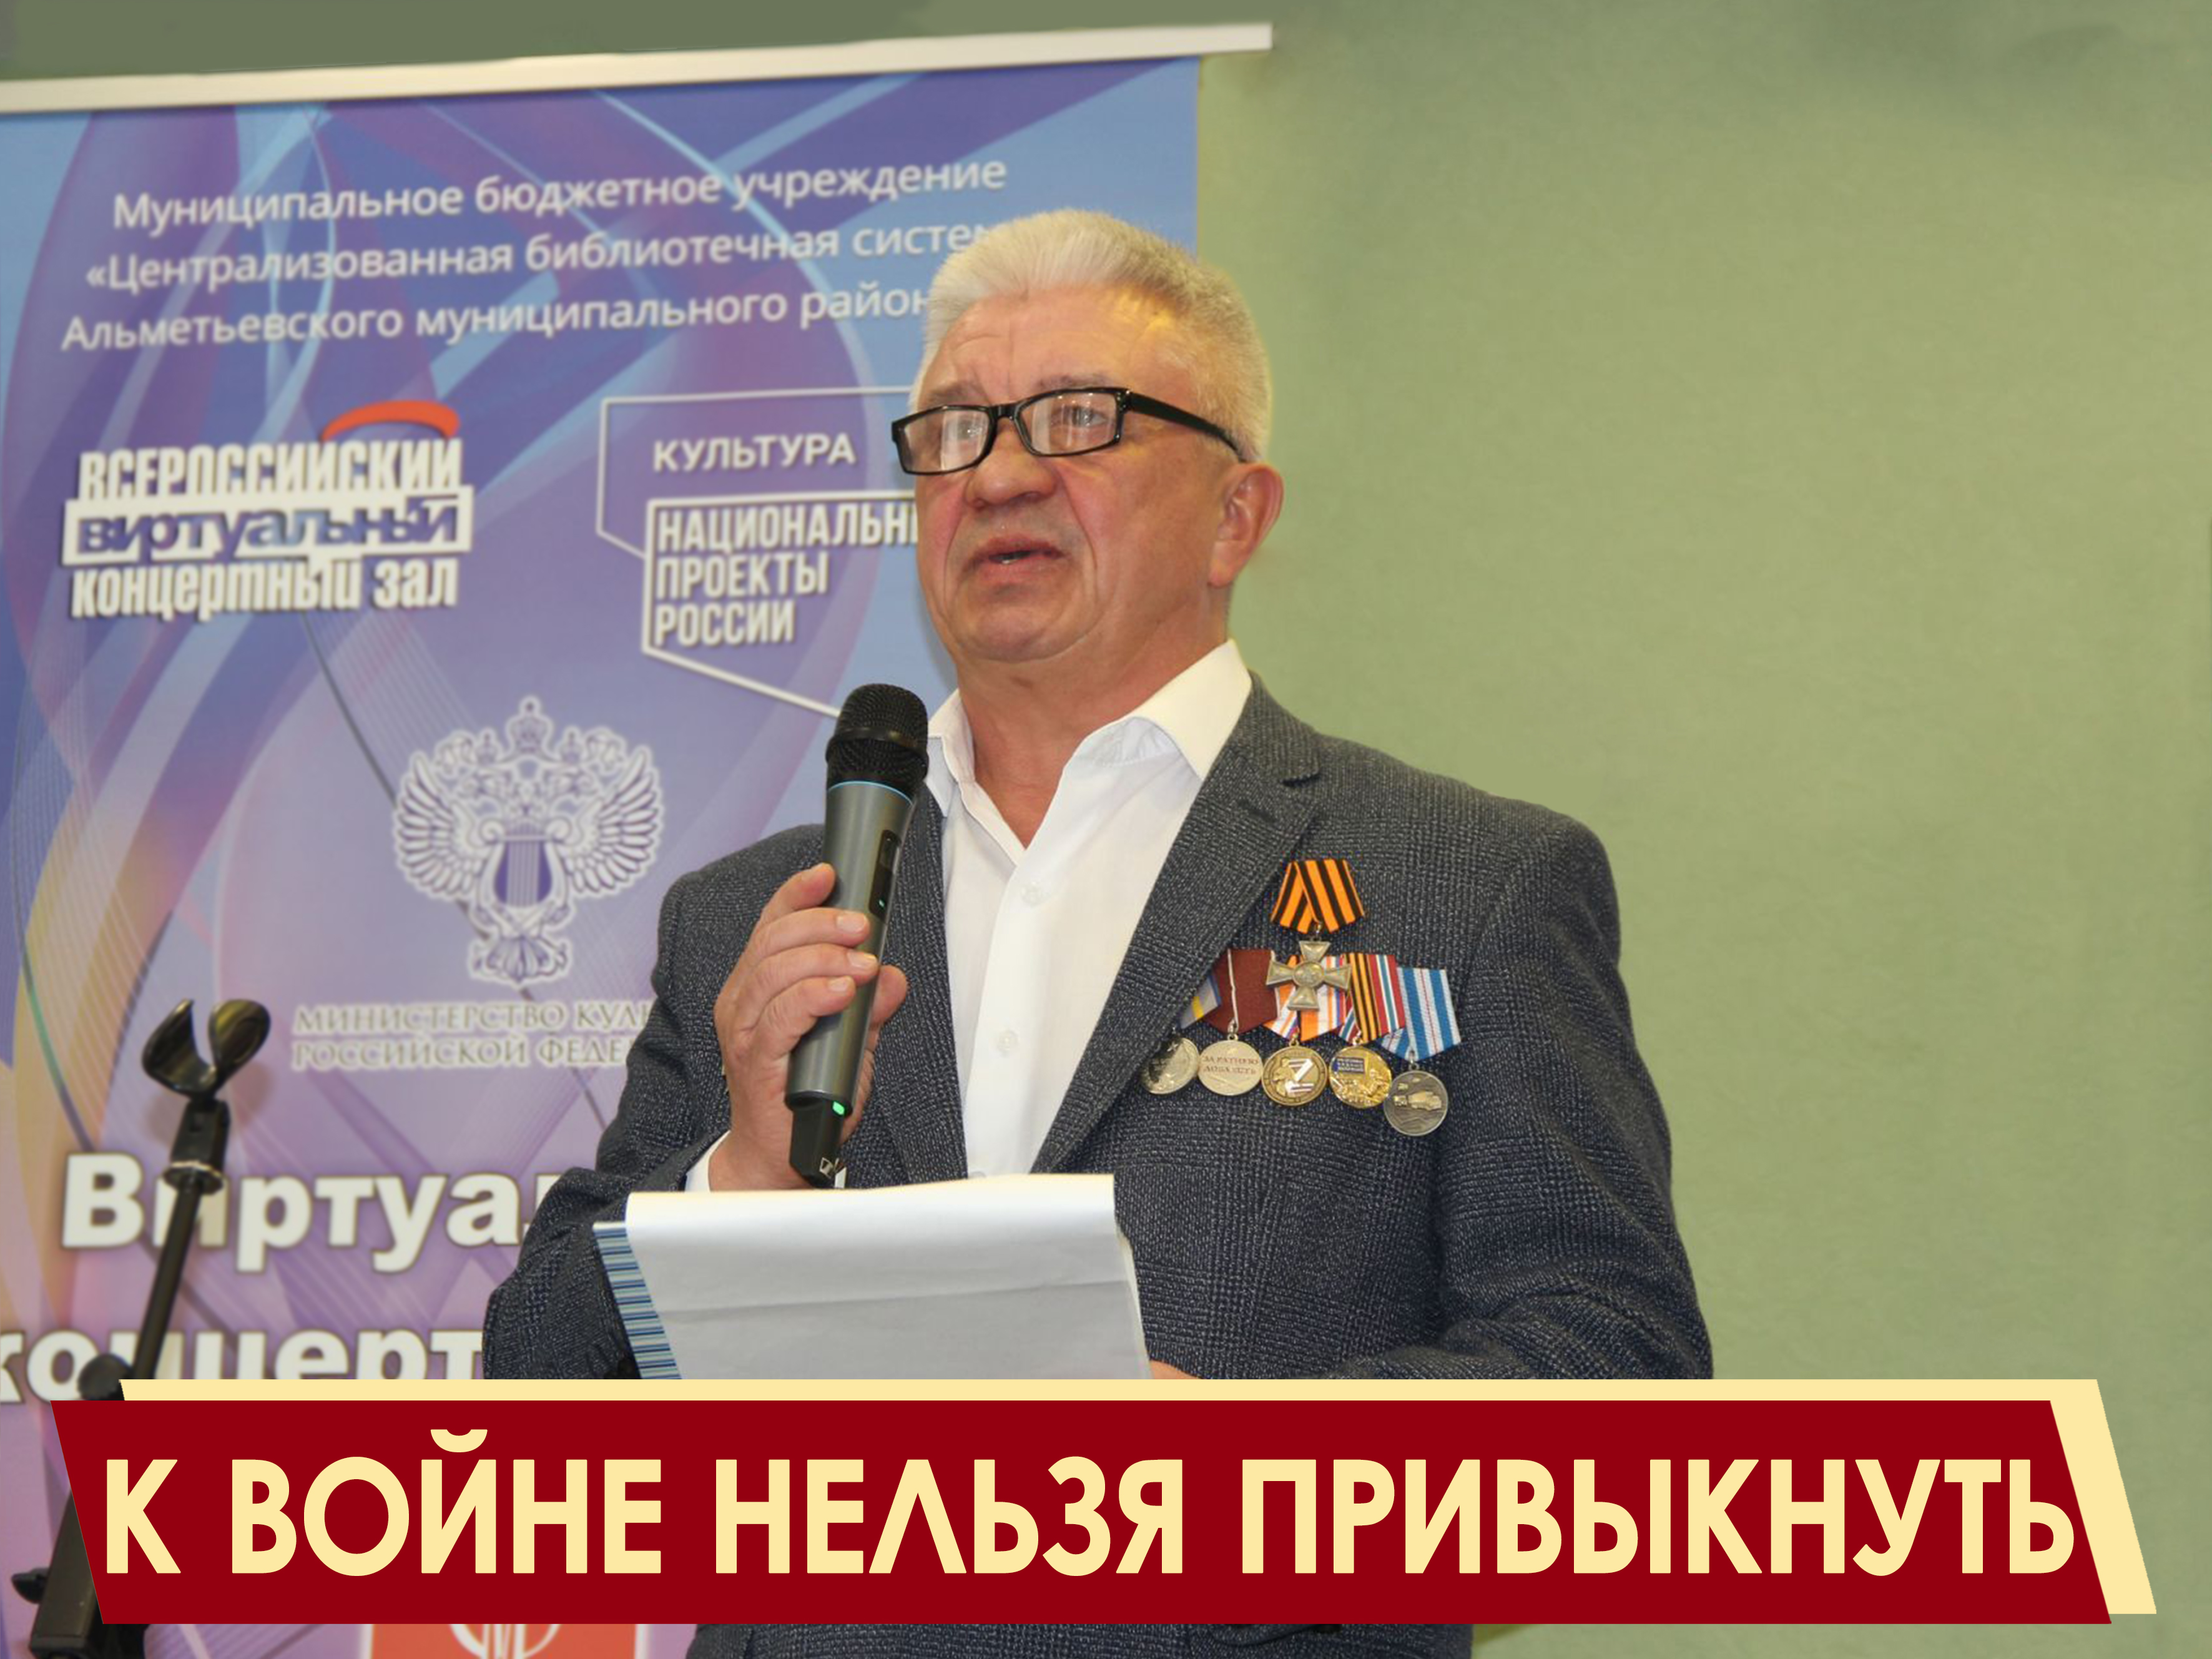 Автор ИСП презентовал свои книги в Татарстане